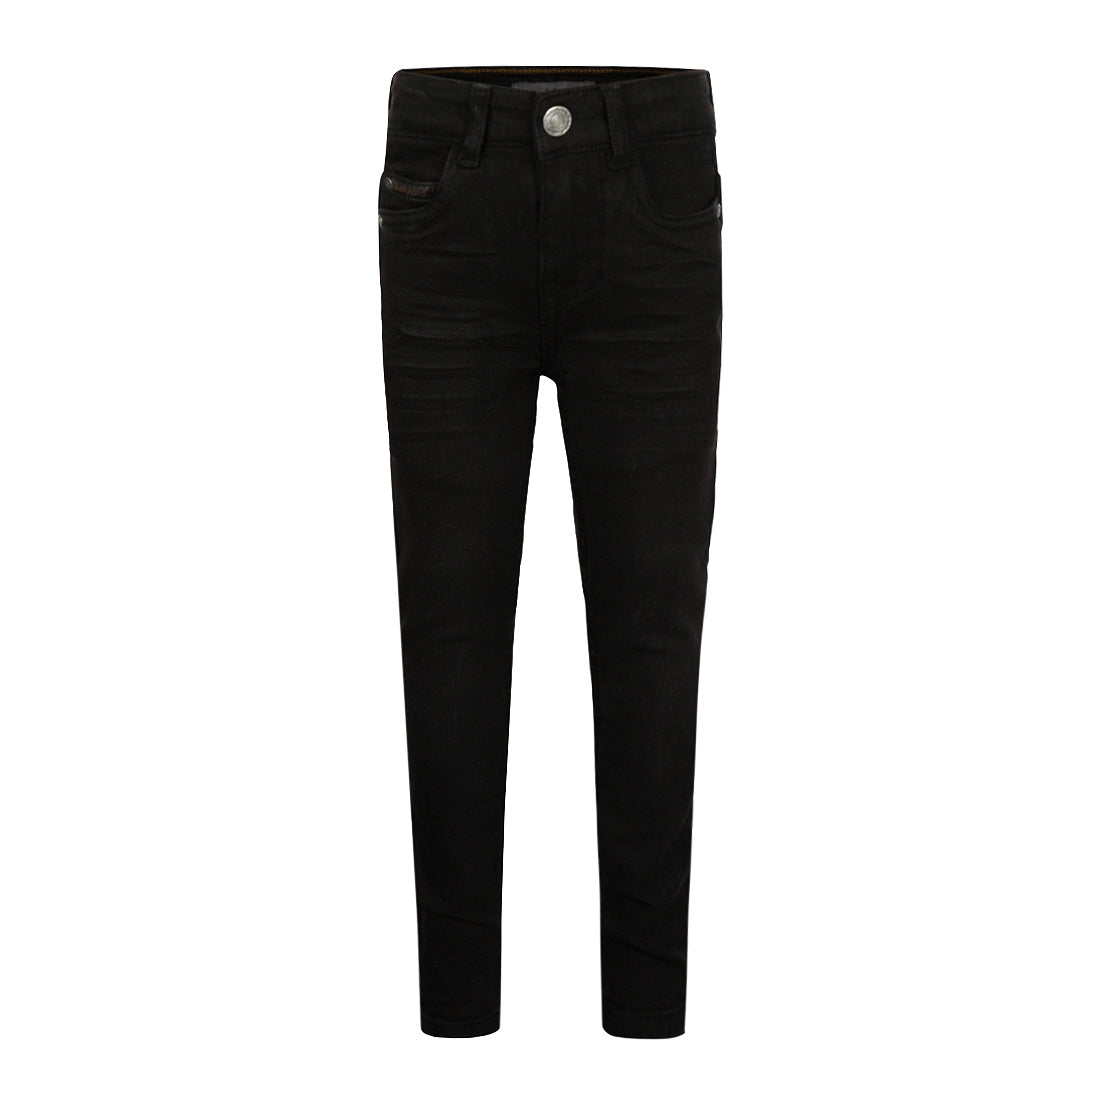 Jongens Jeans Skinny van Koko Noko in de kleur Black jeans in maat 128.